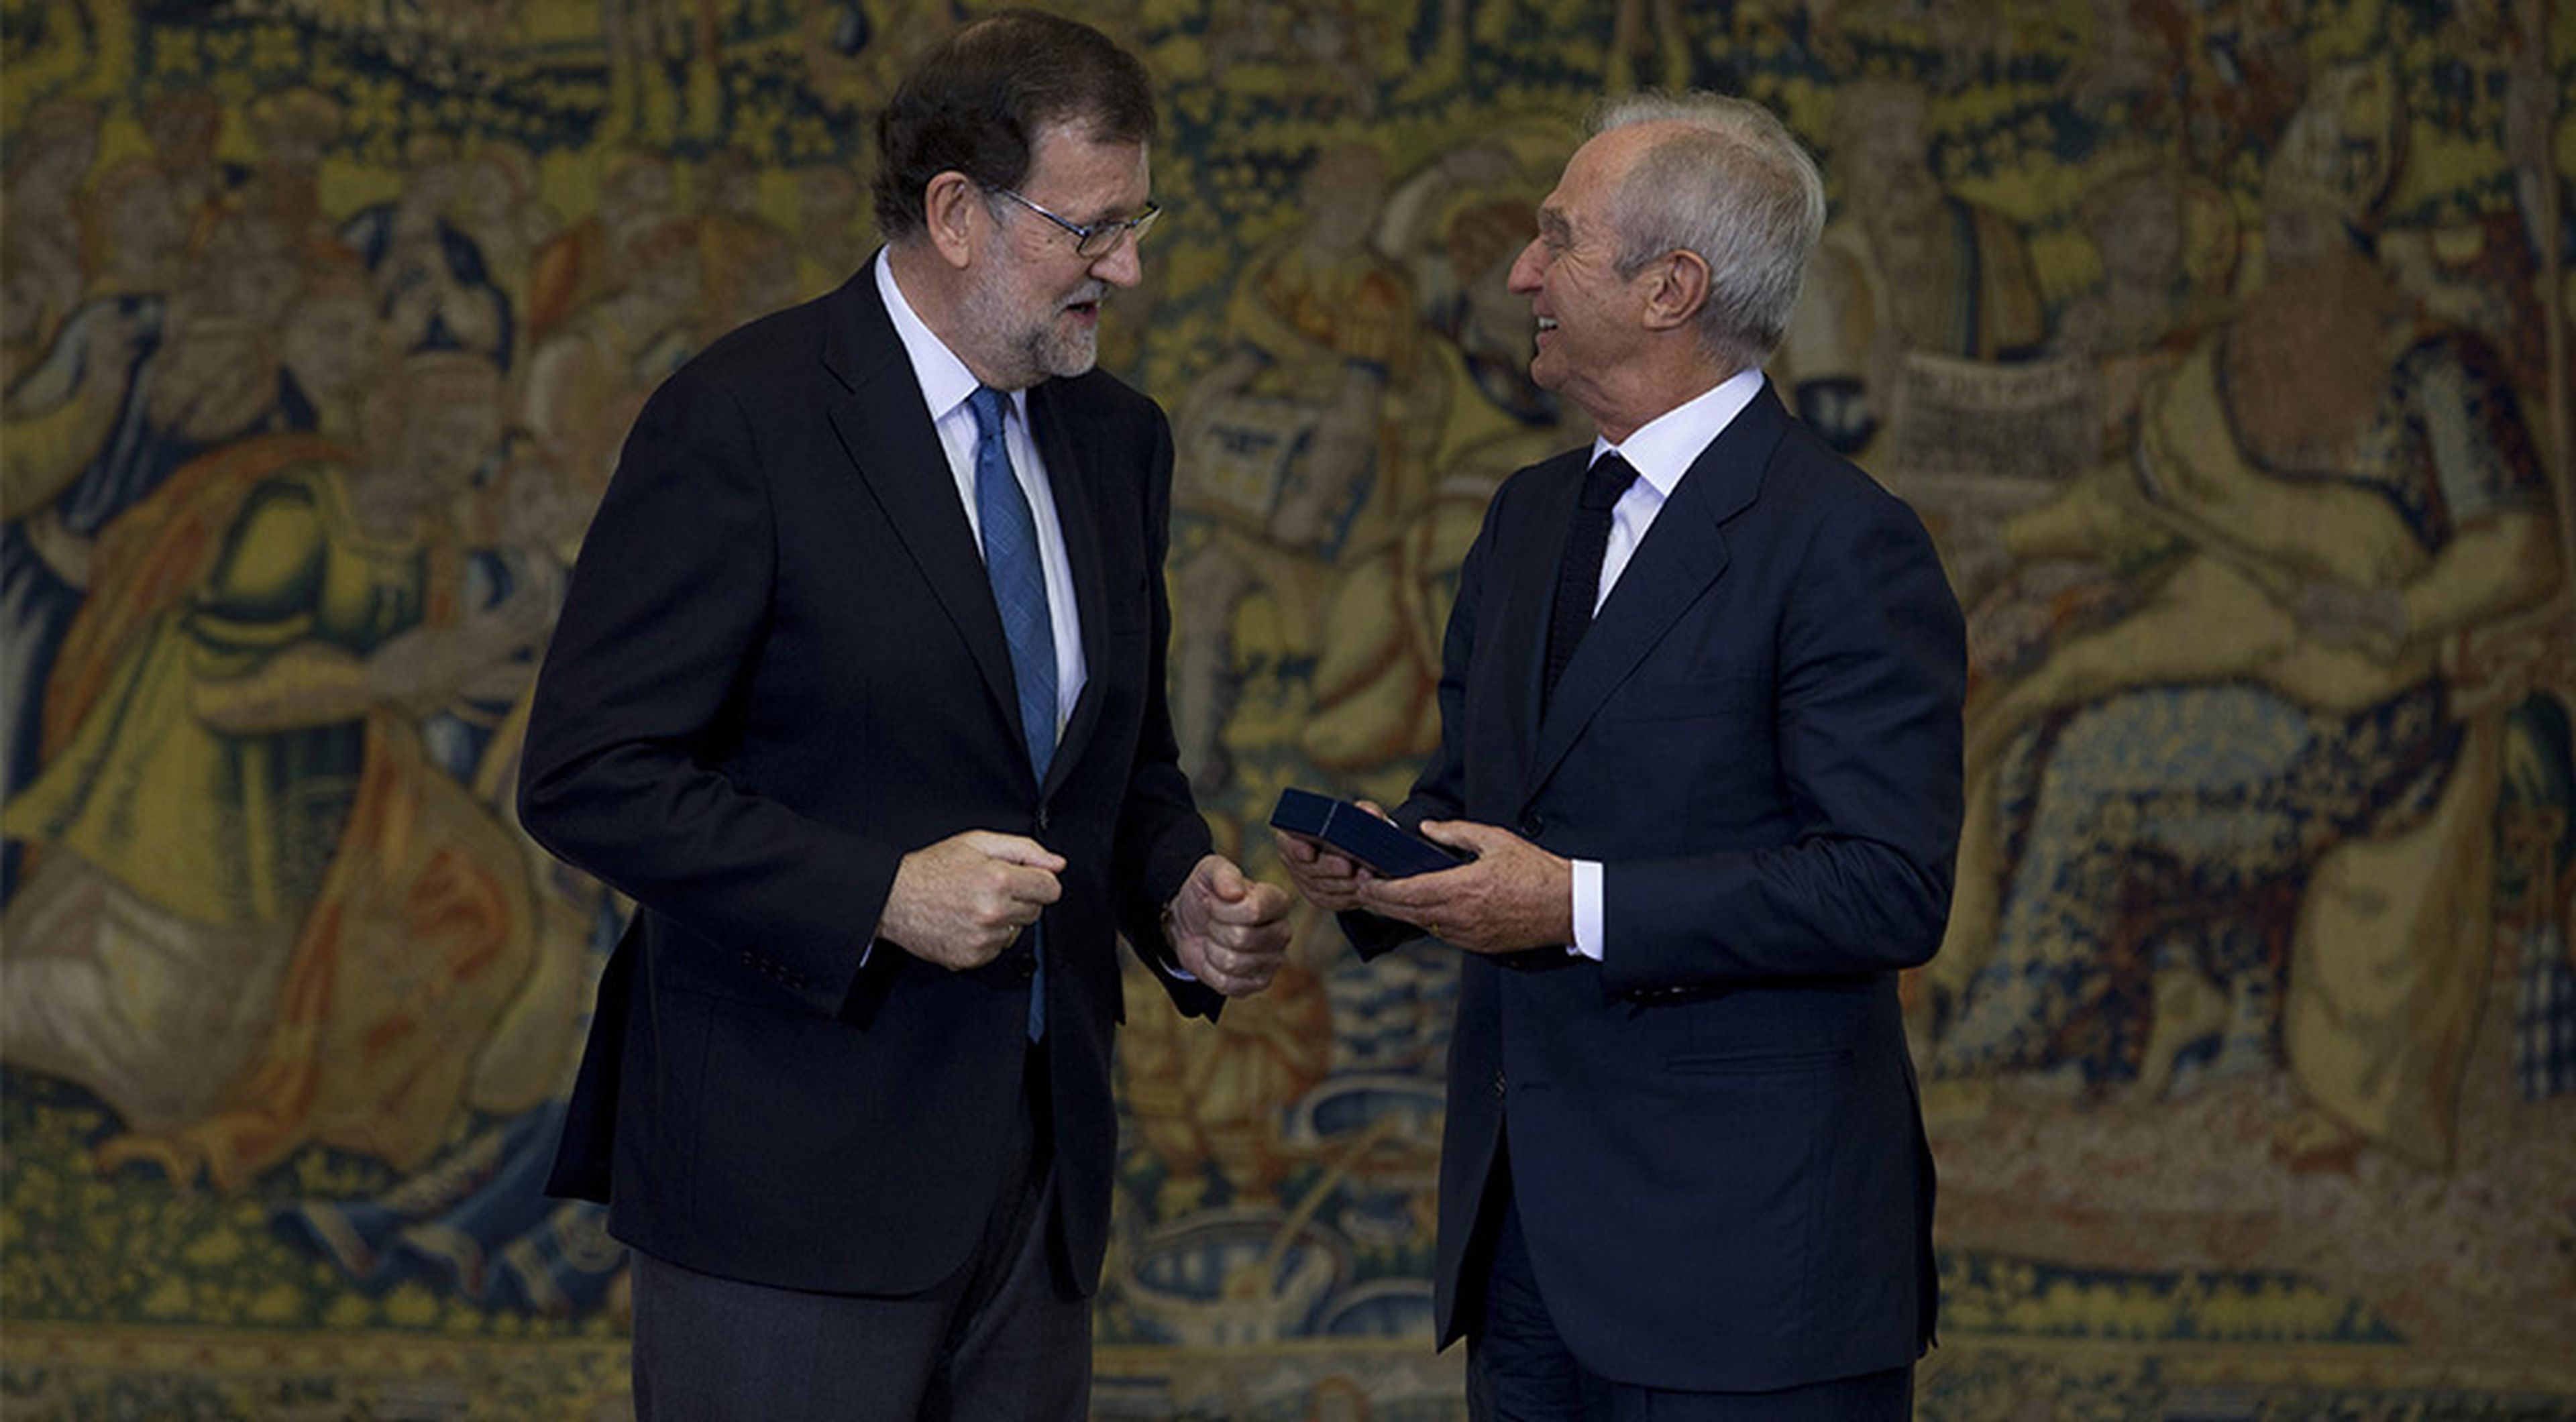 Alberto Palatchi (derecha) recibe la Medalla de Oro al Mérito en el Trabajo de manos de Mariano Rajoy.